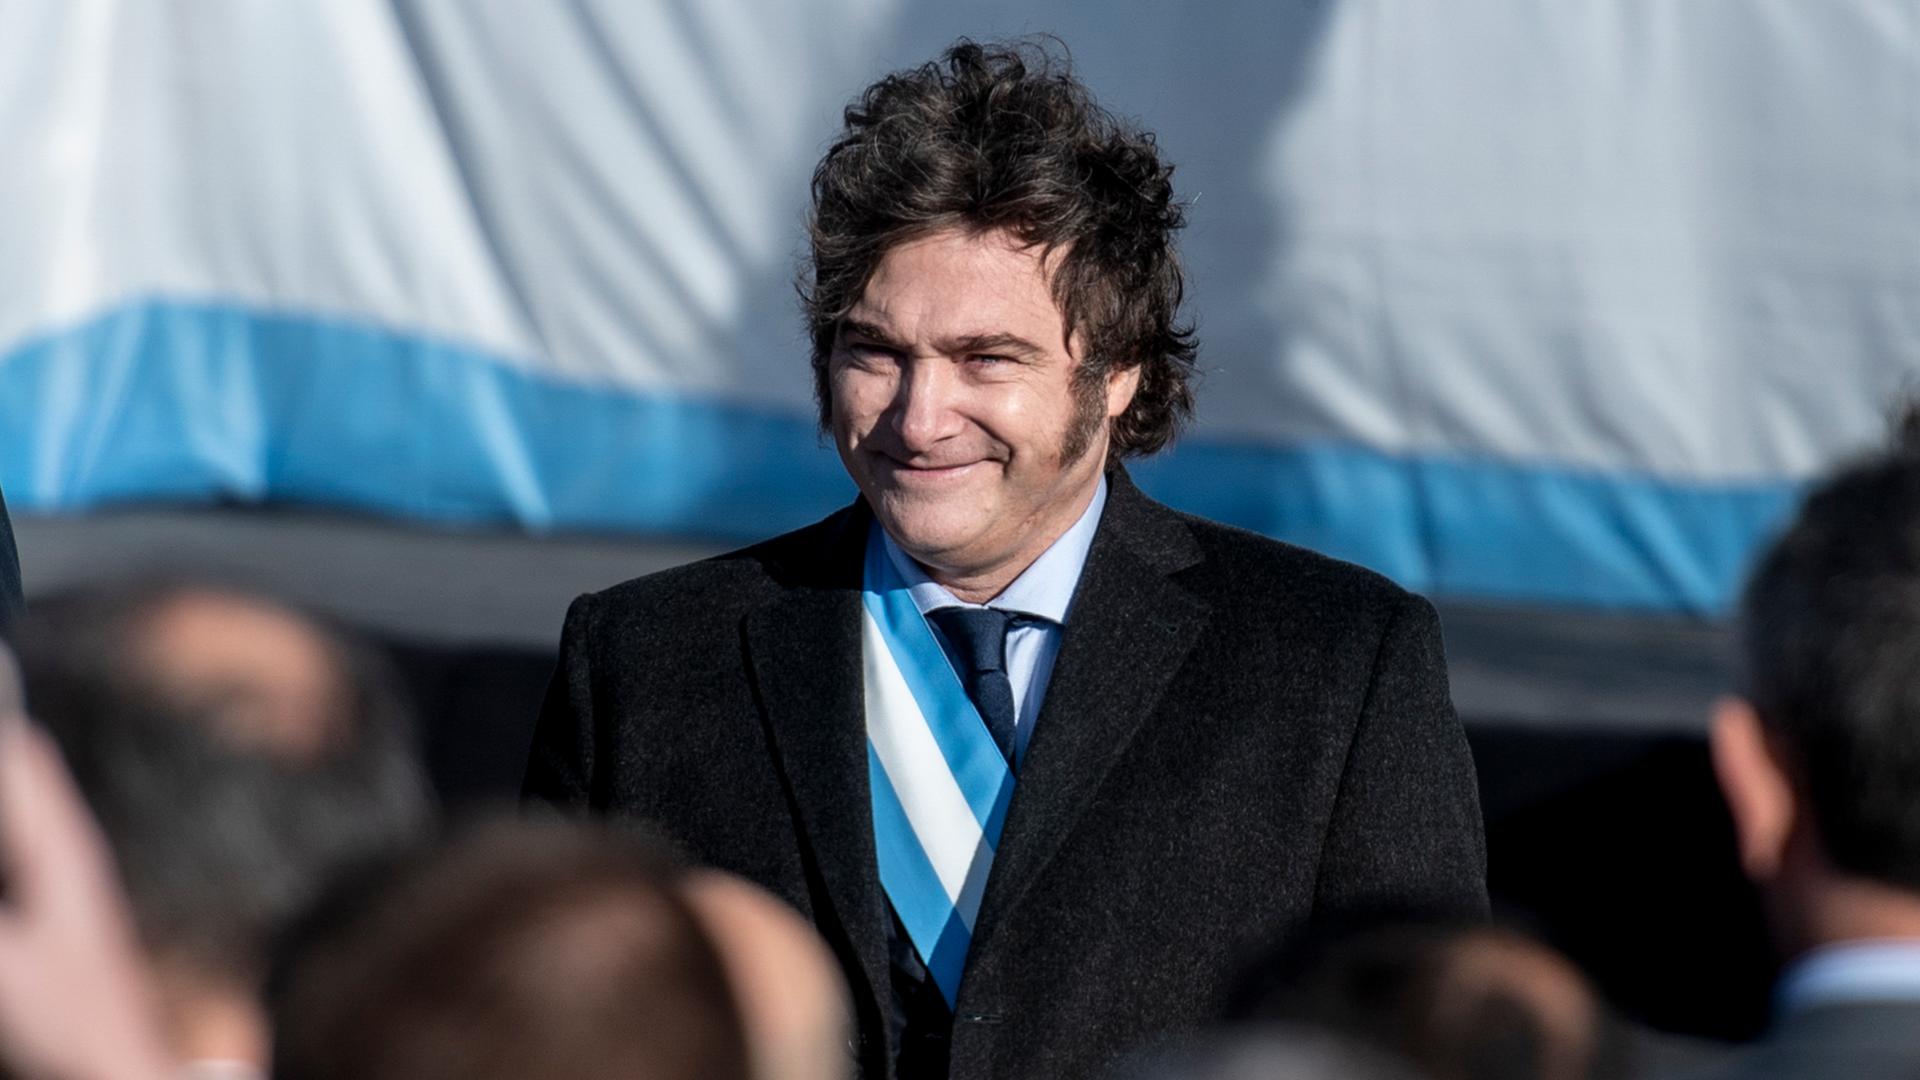 Javier Milei trägt eine blau-weiße Schärpe unter seinem schwarzen Sakko, steht vor der argentinischen Flagge und lächelt ins Publikum